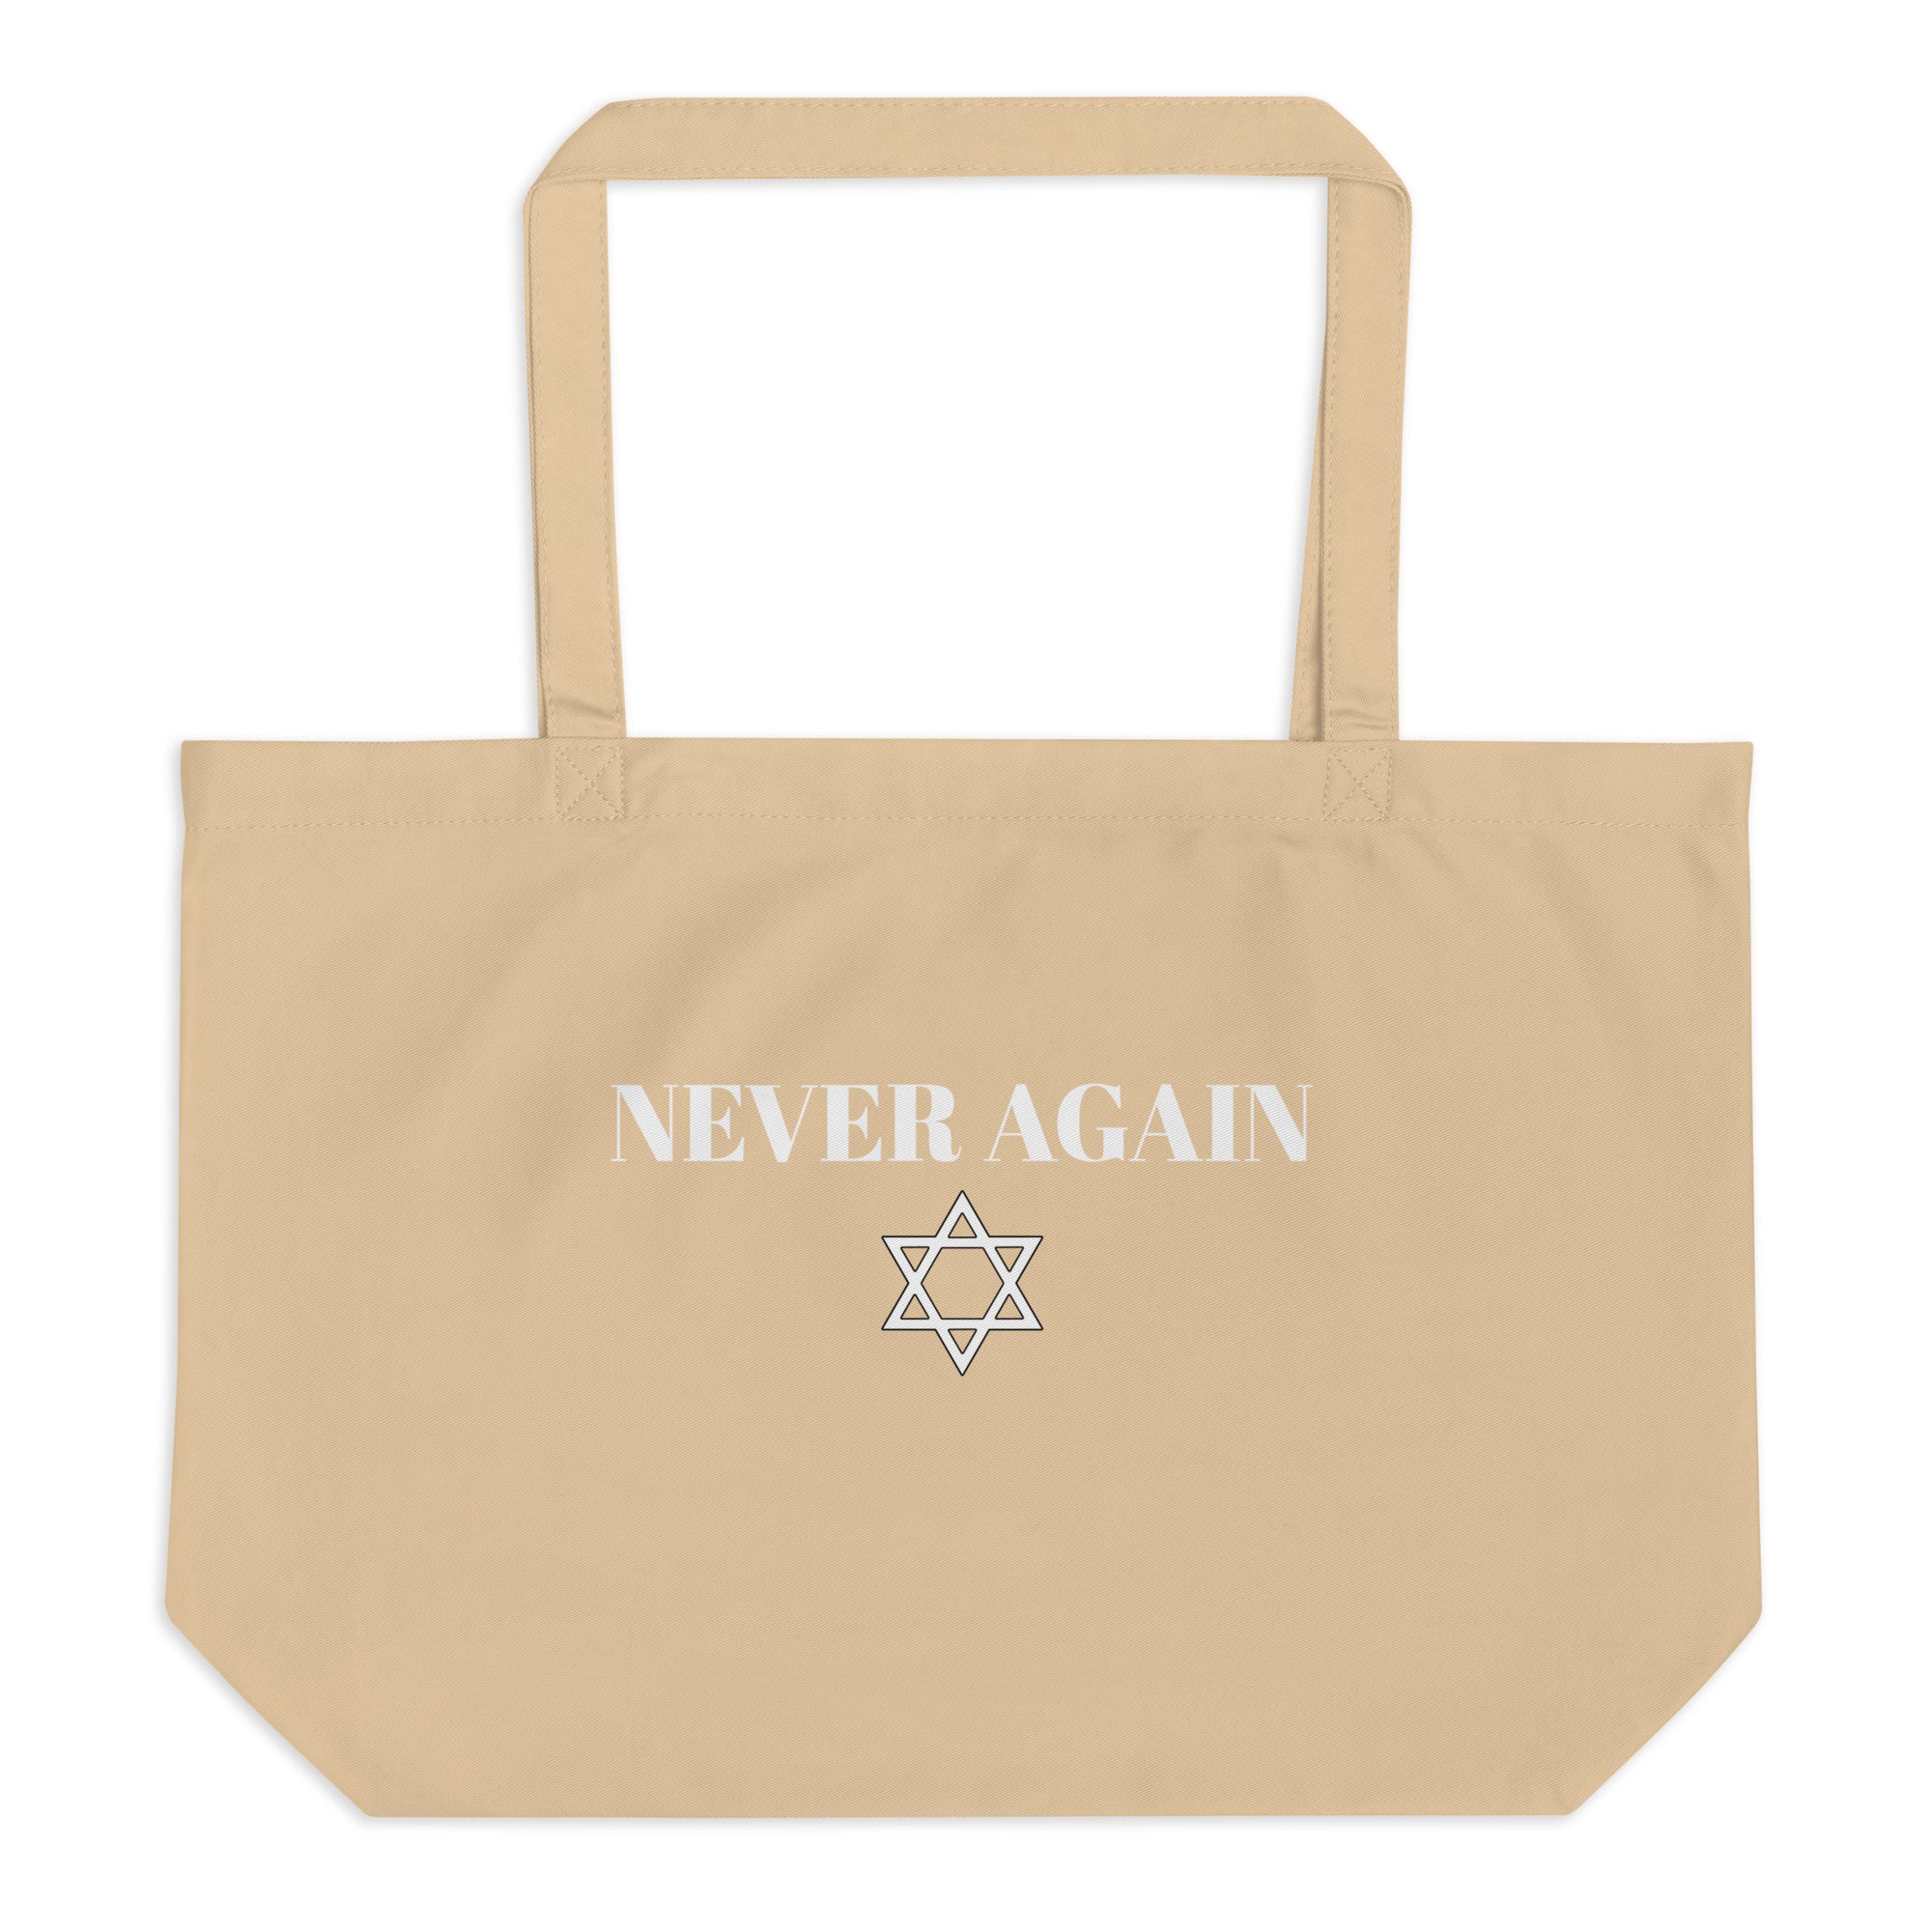 Never Again - Large organic tote bag